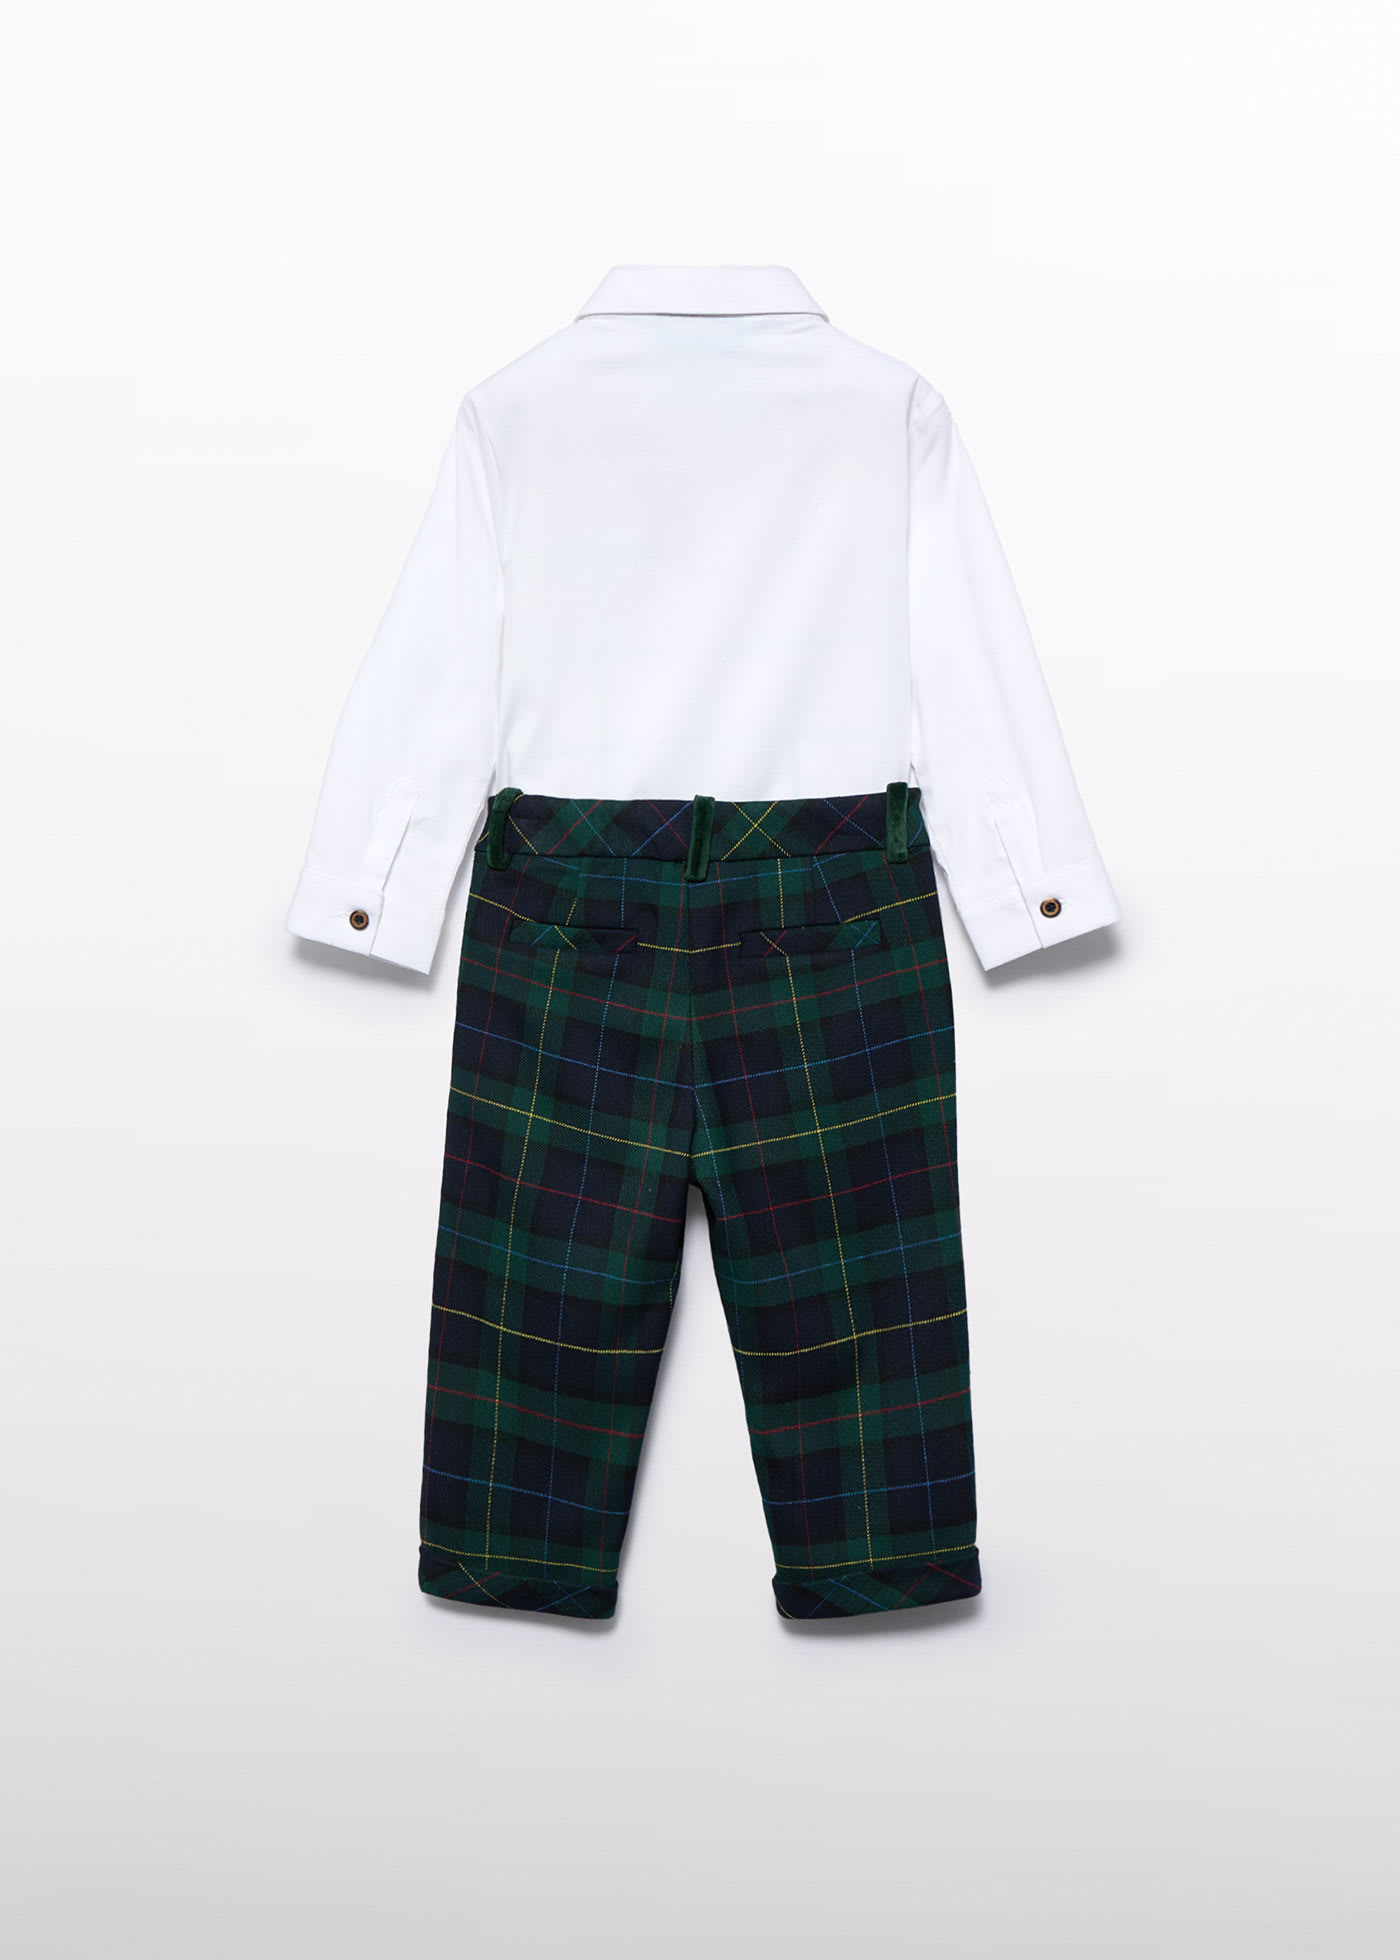 Completo pantalone quadri scozzese neonato